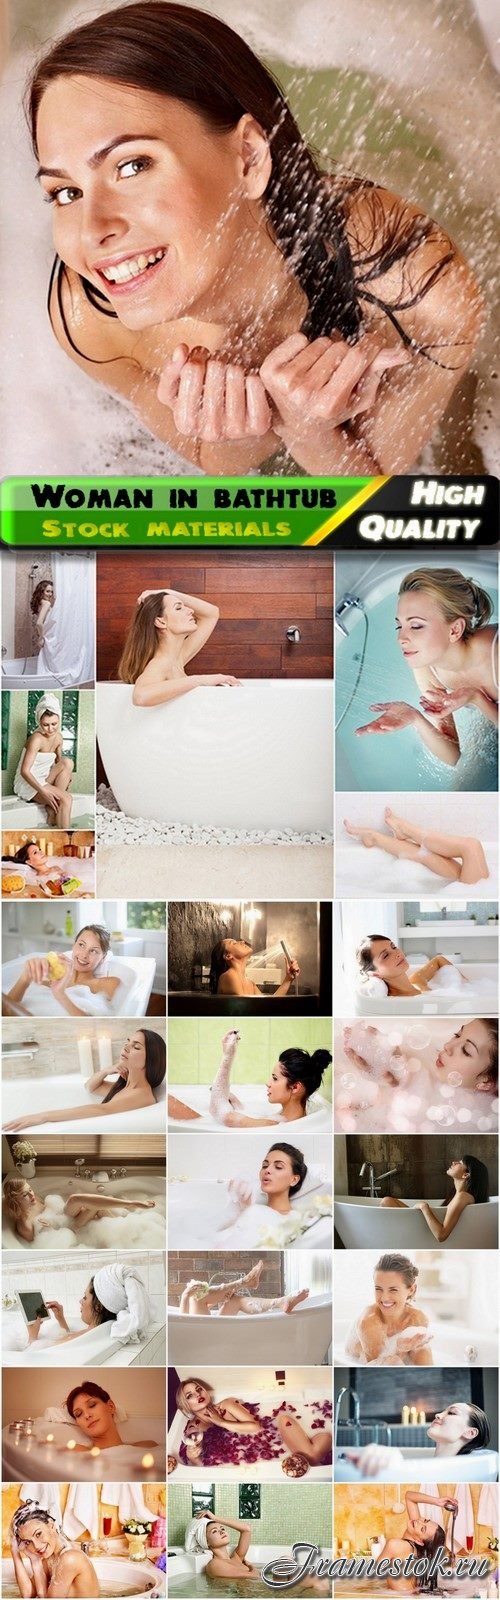 Woman in bathroom with foam in bathtub - 25 HQ Jpg